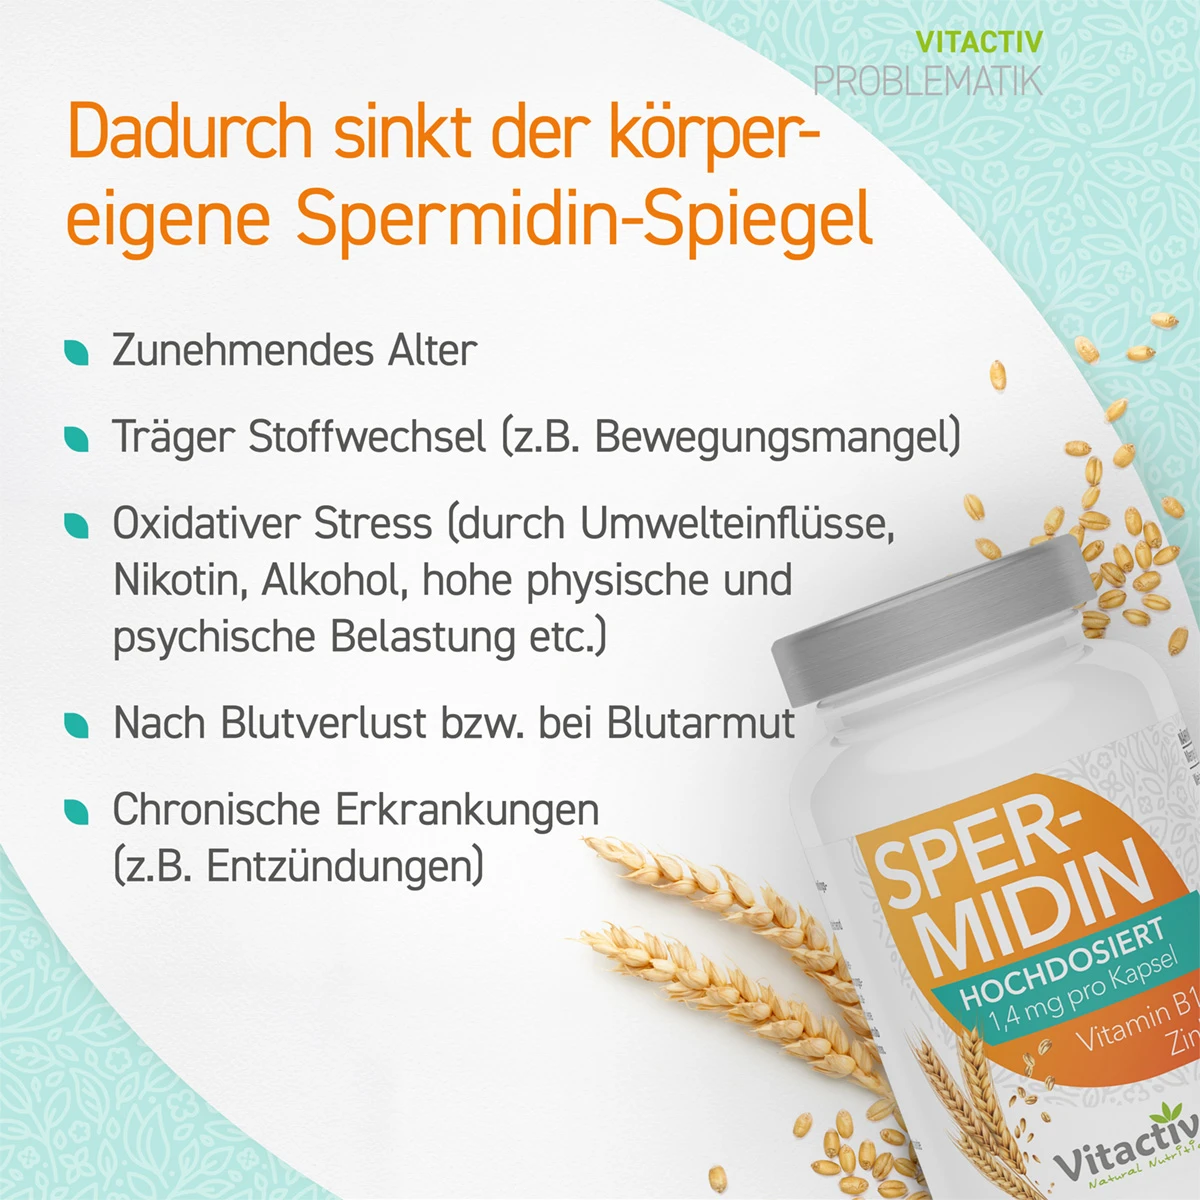 SPERMIDIN Kapseln + Vitamin B1 + Zink